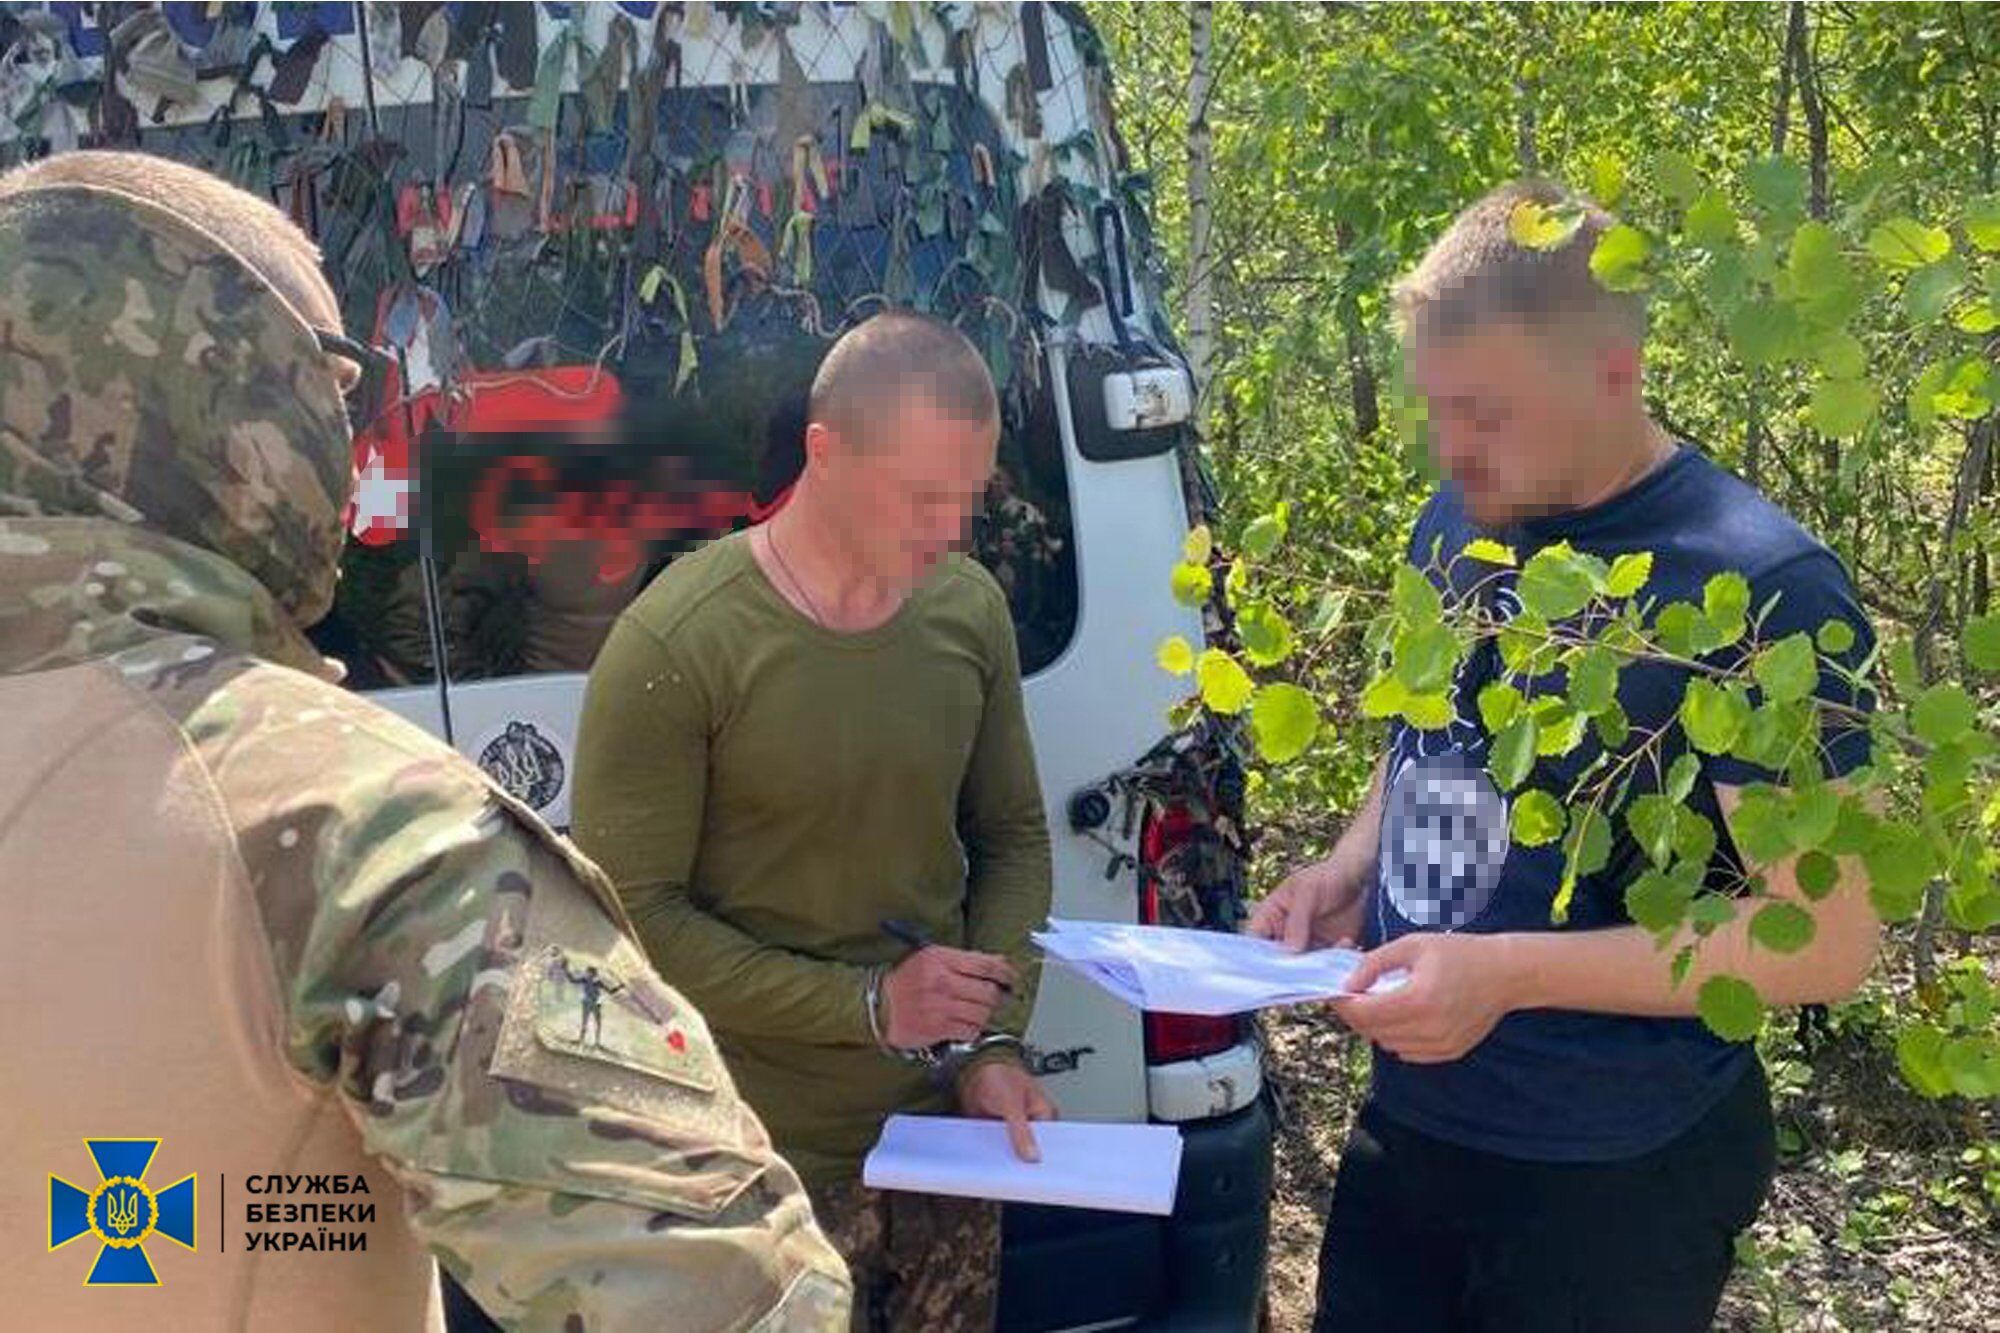 Специалисты установят цель экс-боевика проходить воинскую службу в Украине